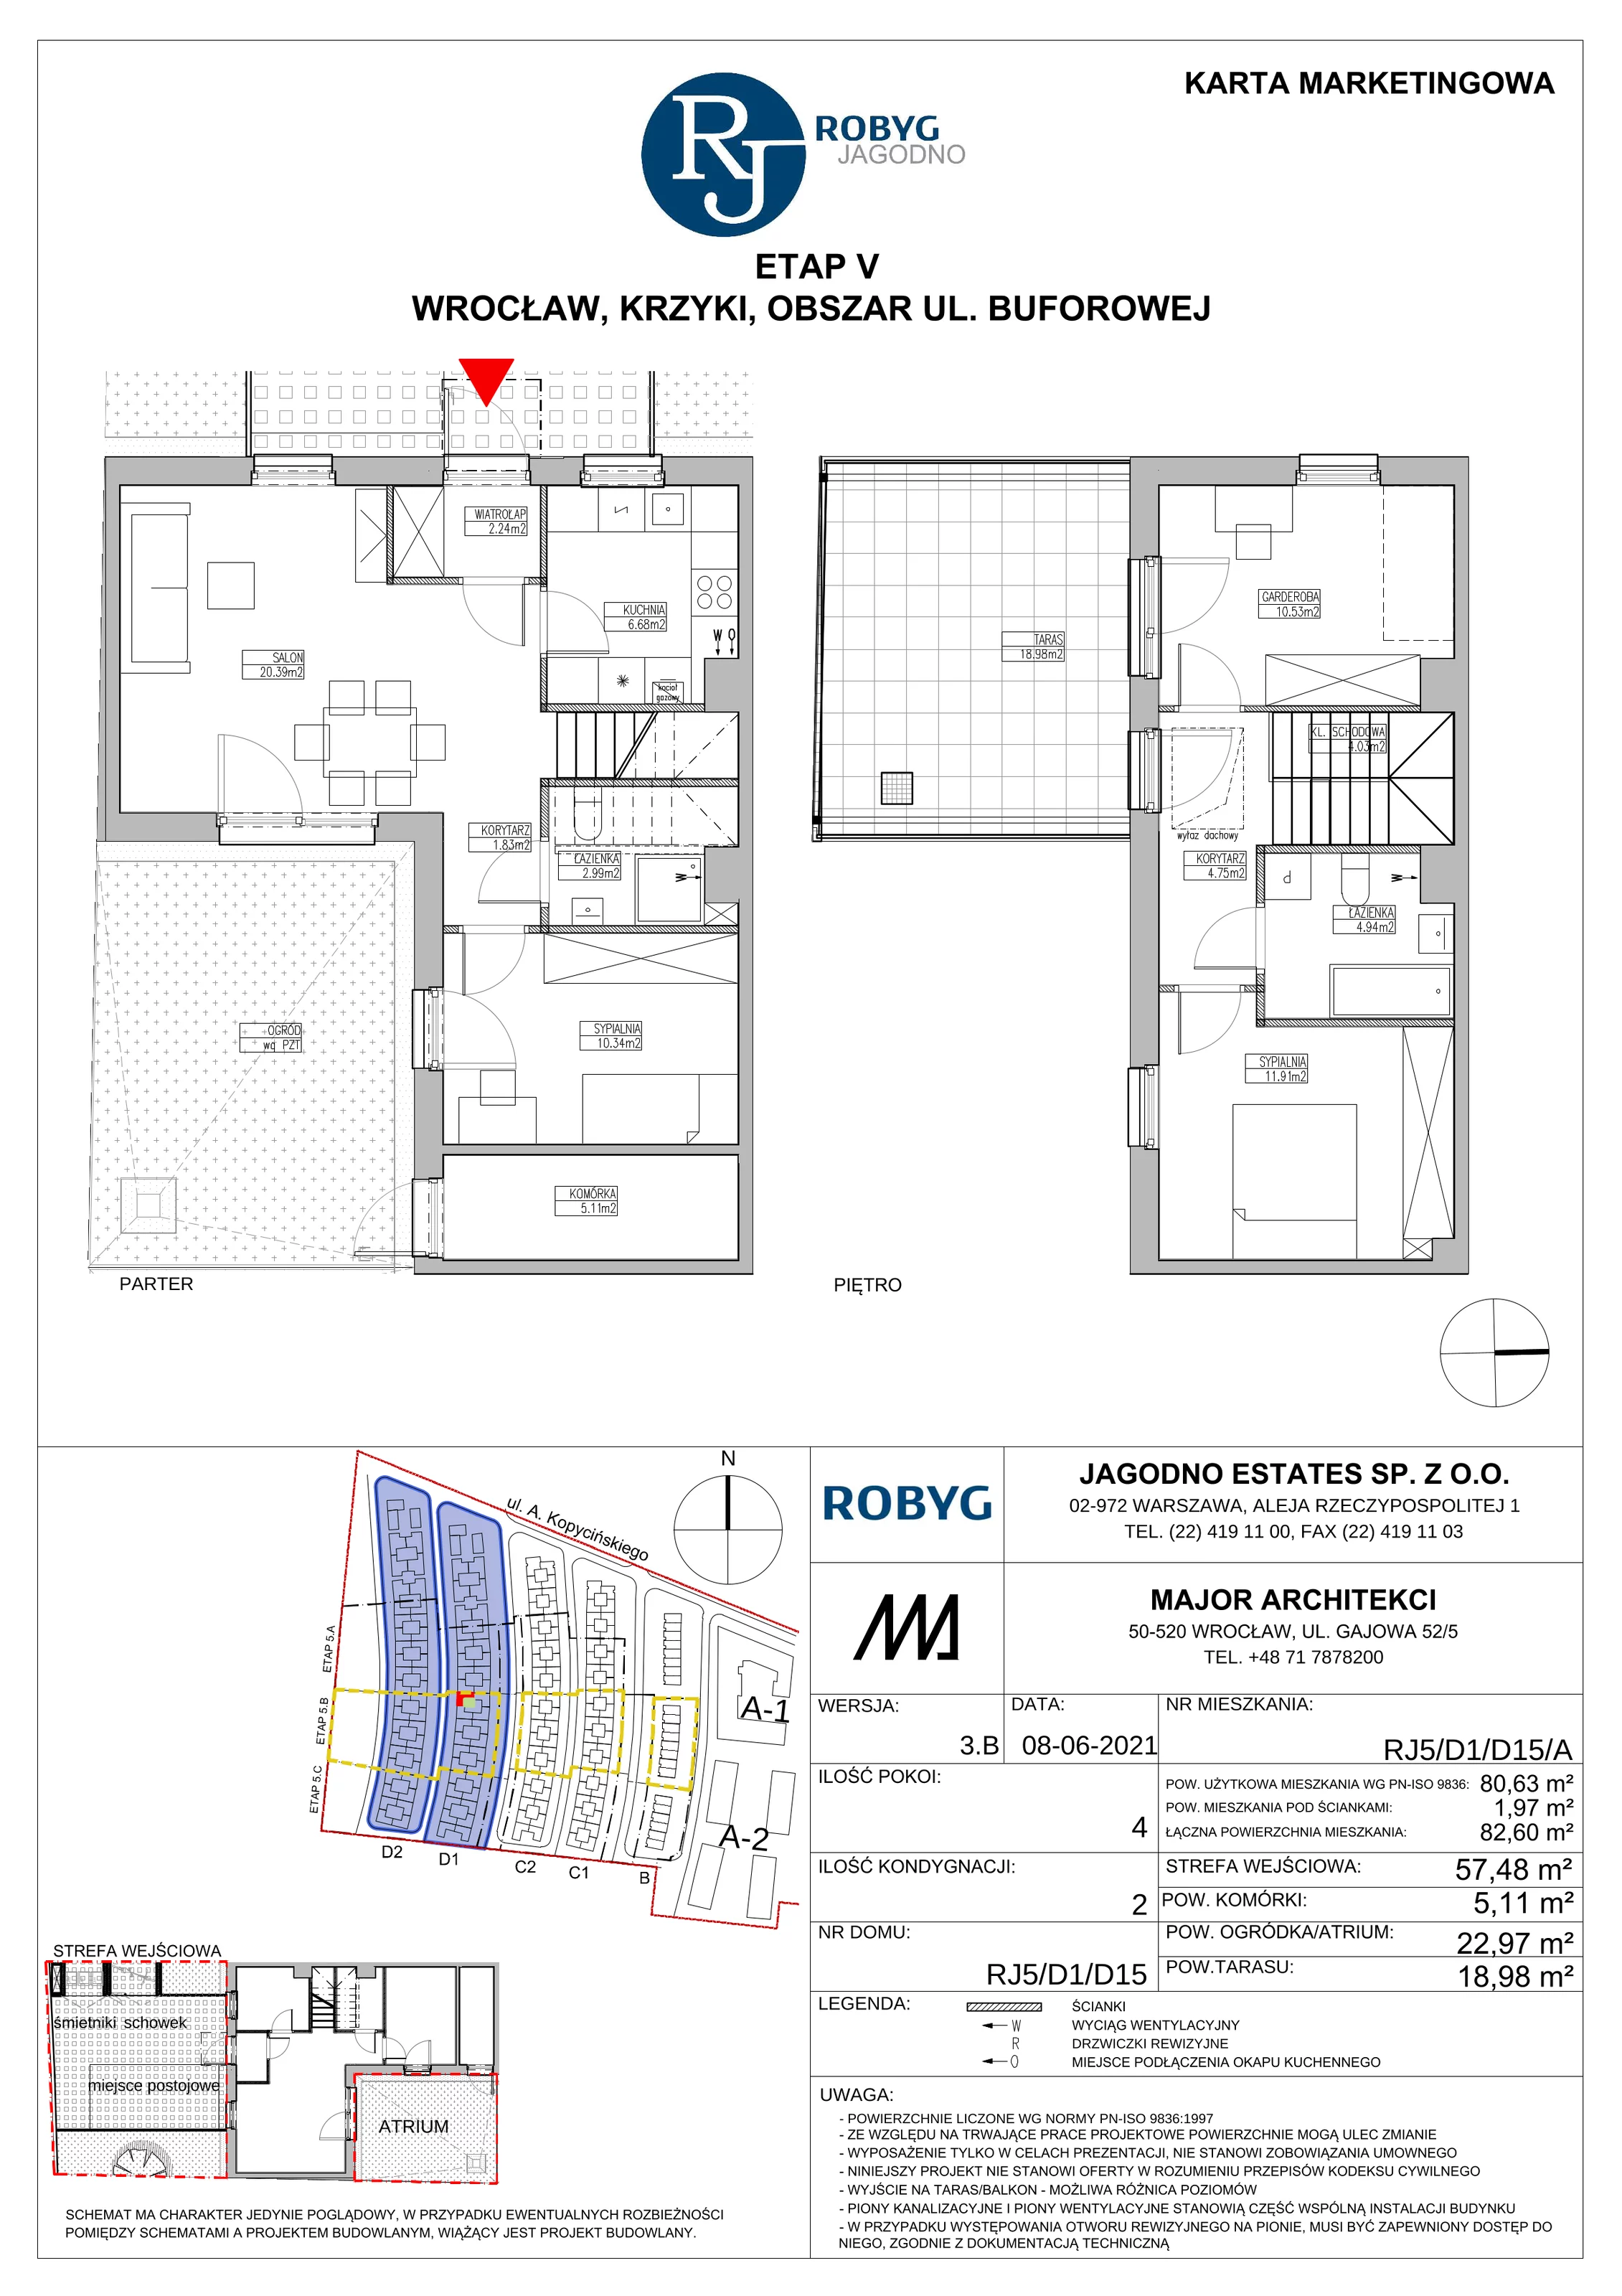 Dom 80,63 m², oferta nr RJ5/D1/D15/A, Robyg Jagodno, Wrocław, Jagodno, Krzyki, ul. Kopycińskiego